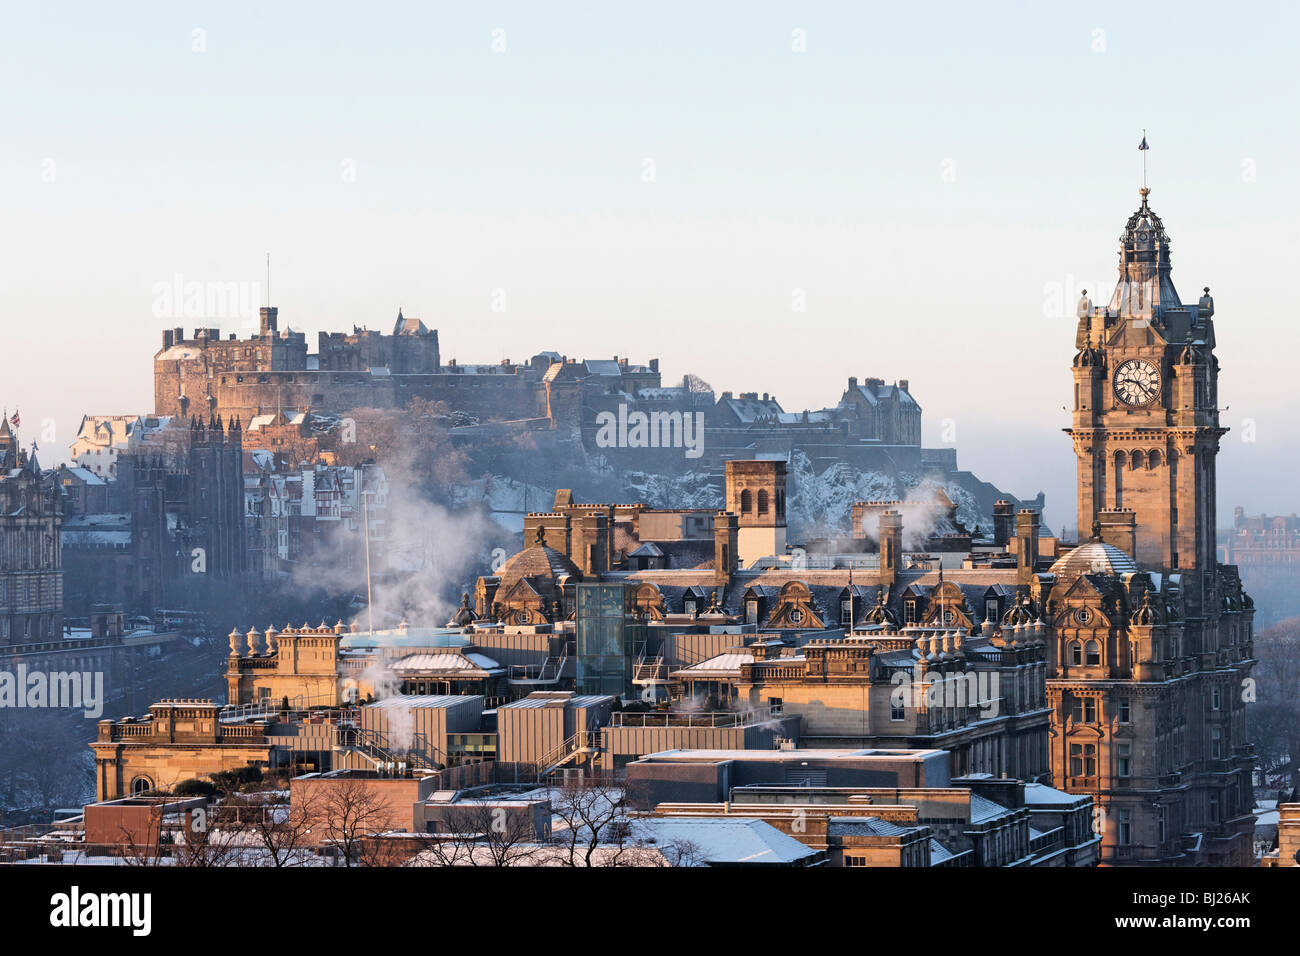 El Castillo de Edimburgo y la torre del reloj del Hotel Balmoral, en Edimburgo, Escocia, Reino Unido. Foto de stock